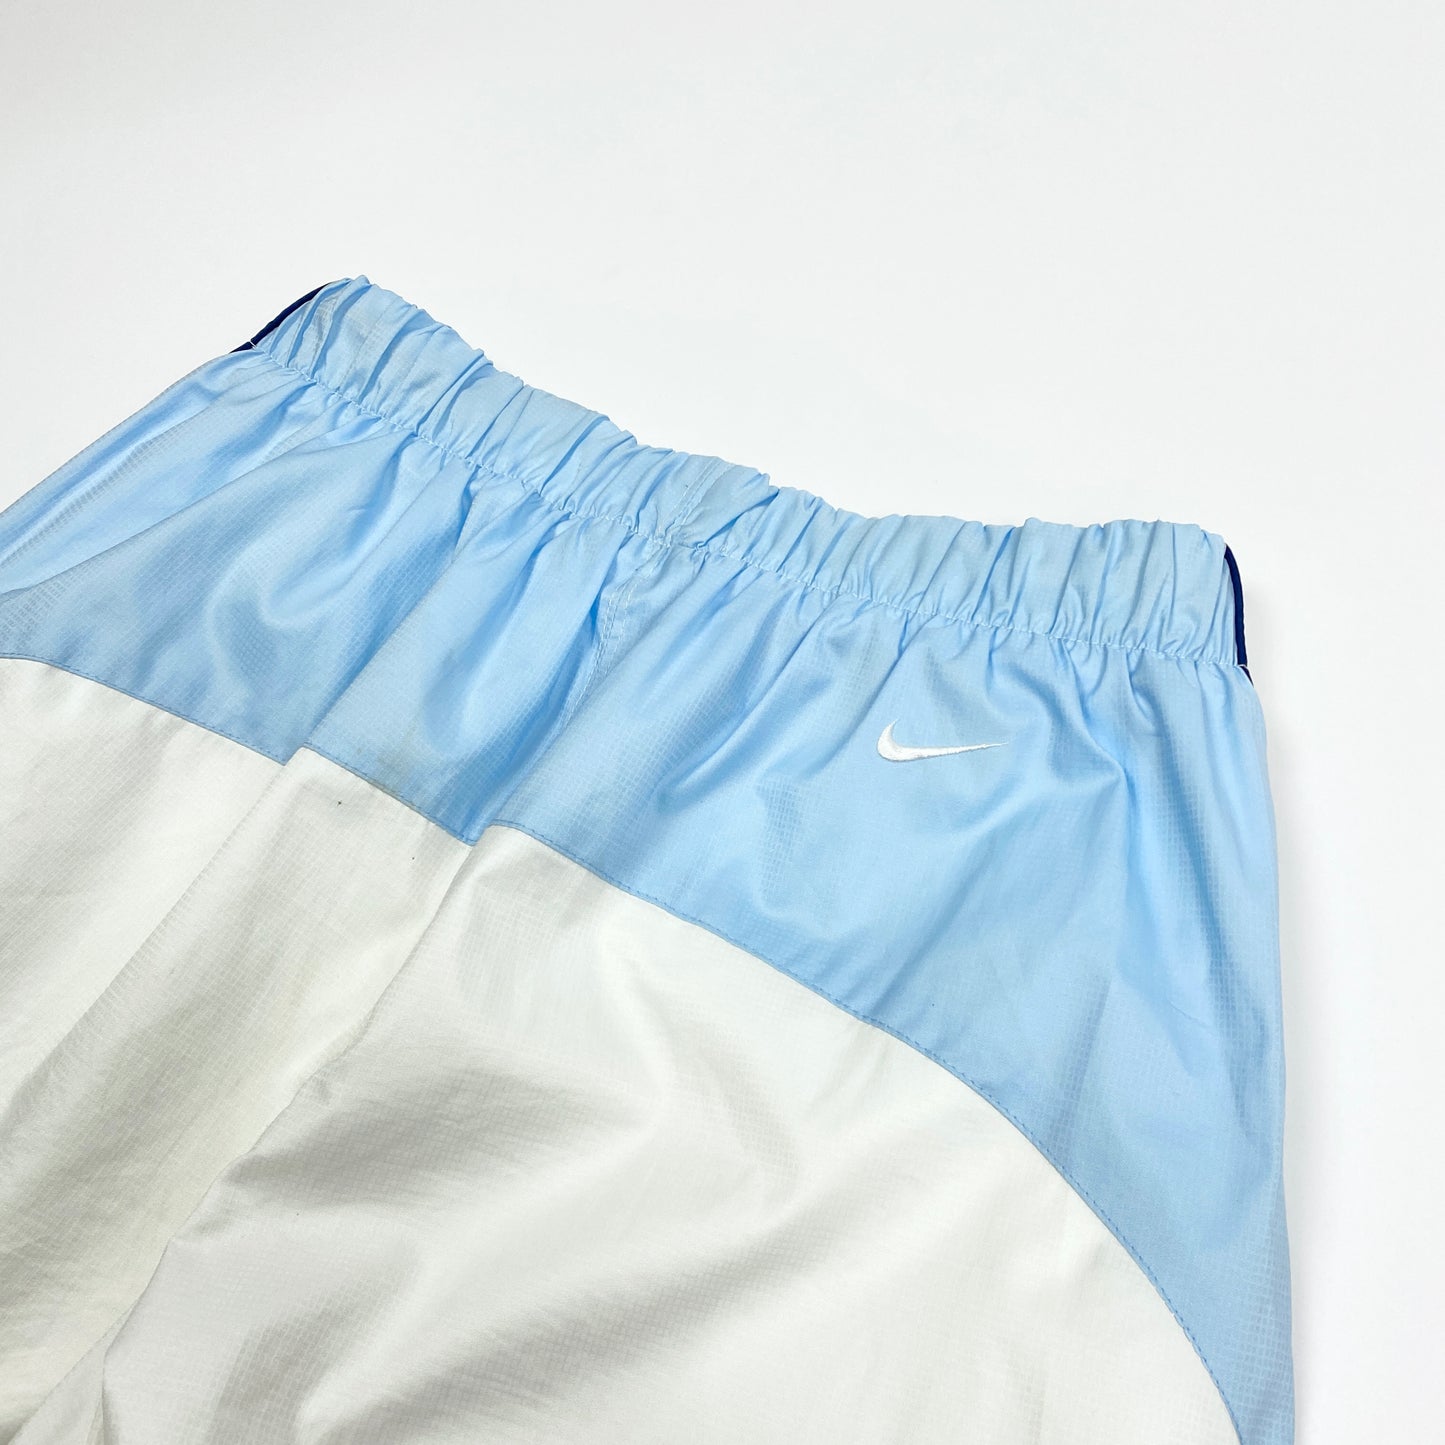 Vintage Nike Tn Track Pants